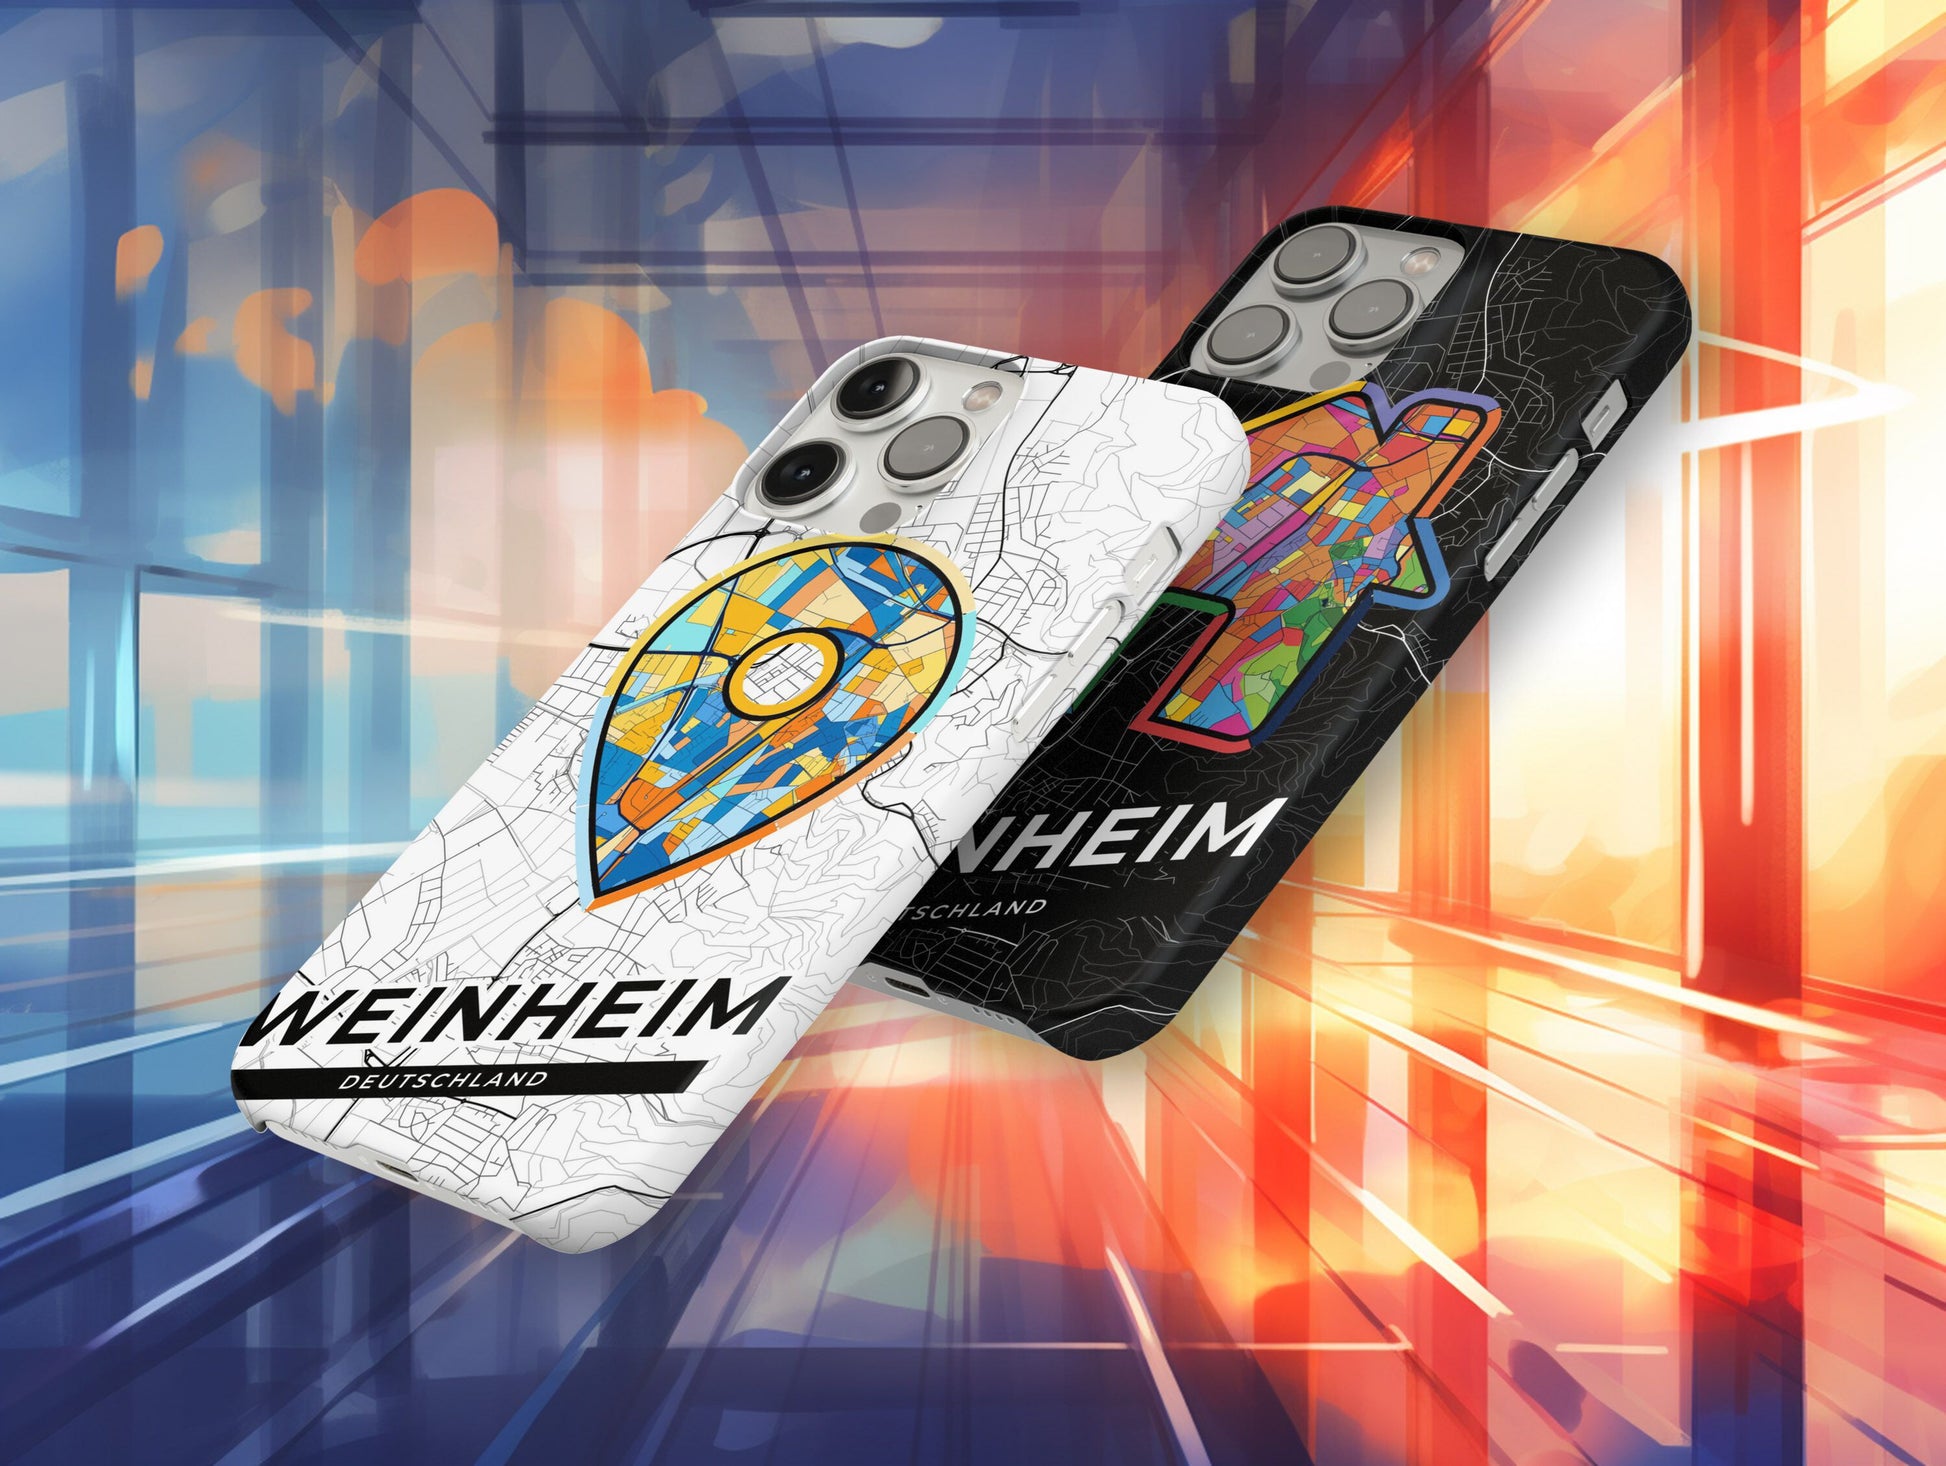 Weinheim Deutschland slim phone case with colorful icon